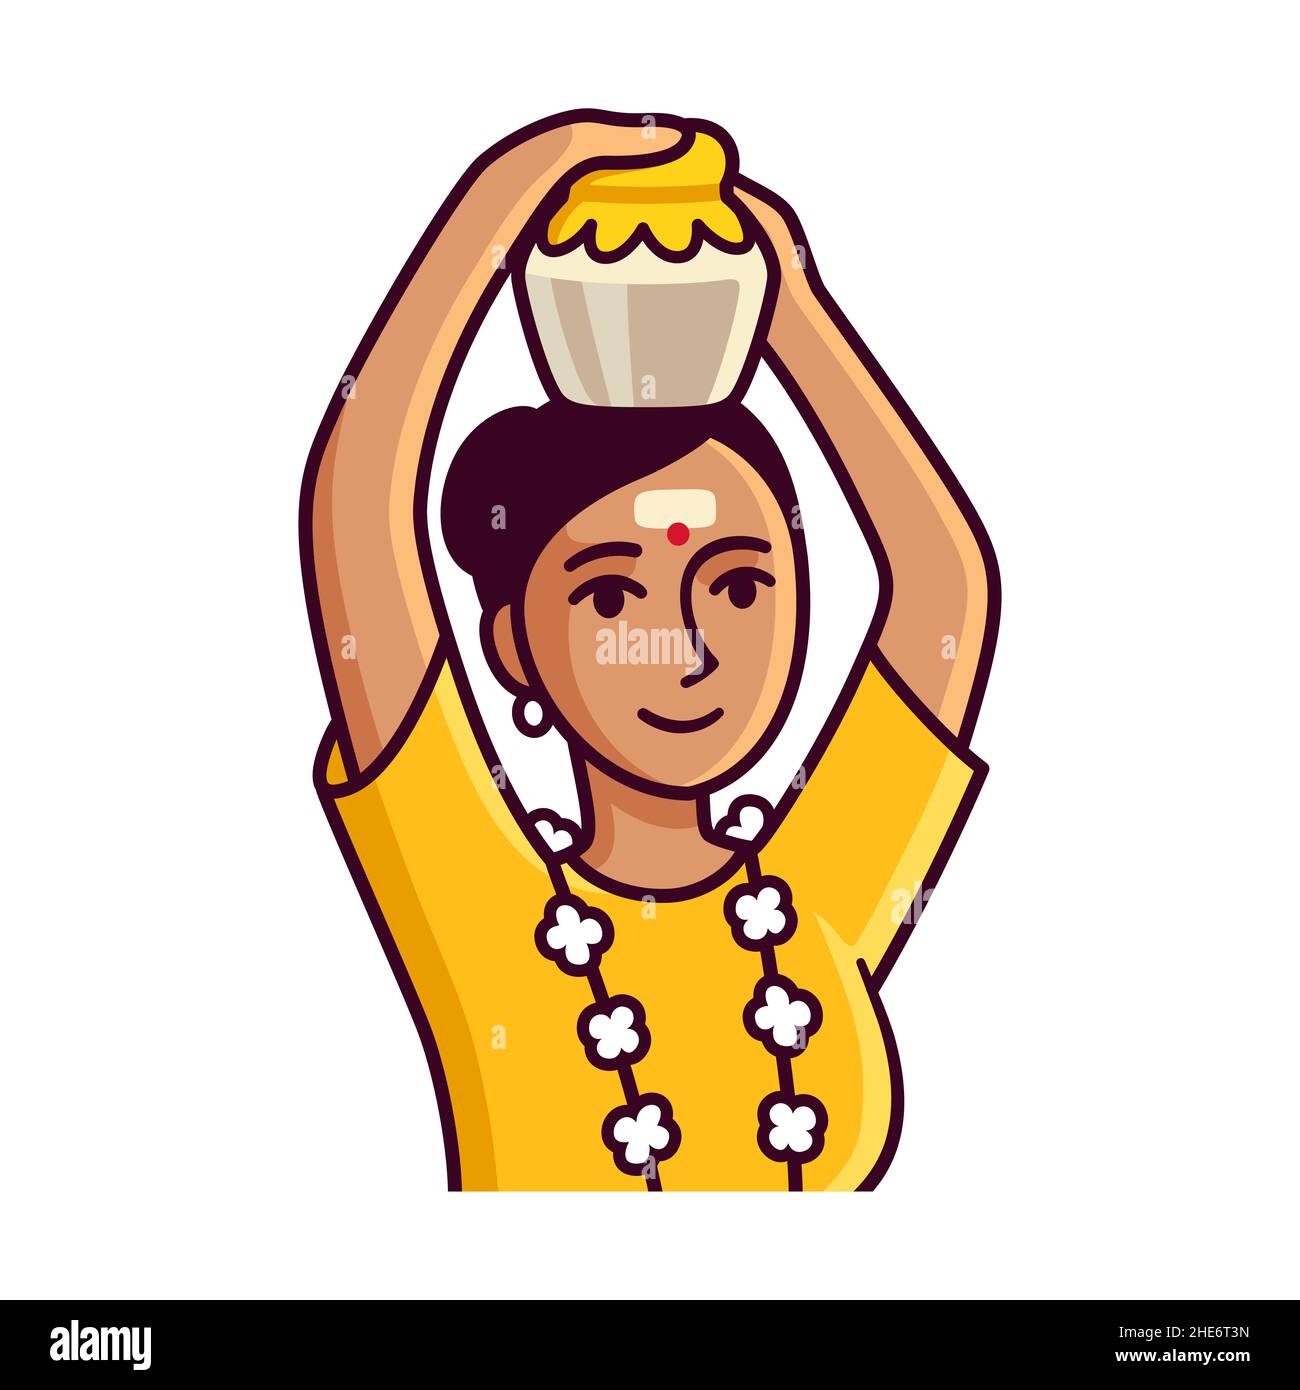 Niedliche Cartoon-Frau mit Milchtopf (paal kudam) für Thaipusam, Tamil Hindu Festival. Isolierte Zeichnung, Vektor-Clip-Art-Illustration. Stock Vektor